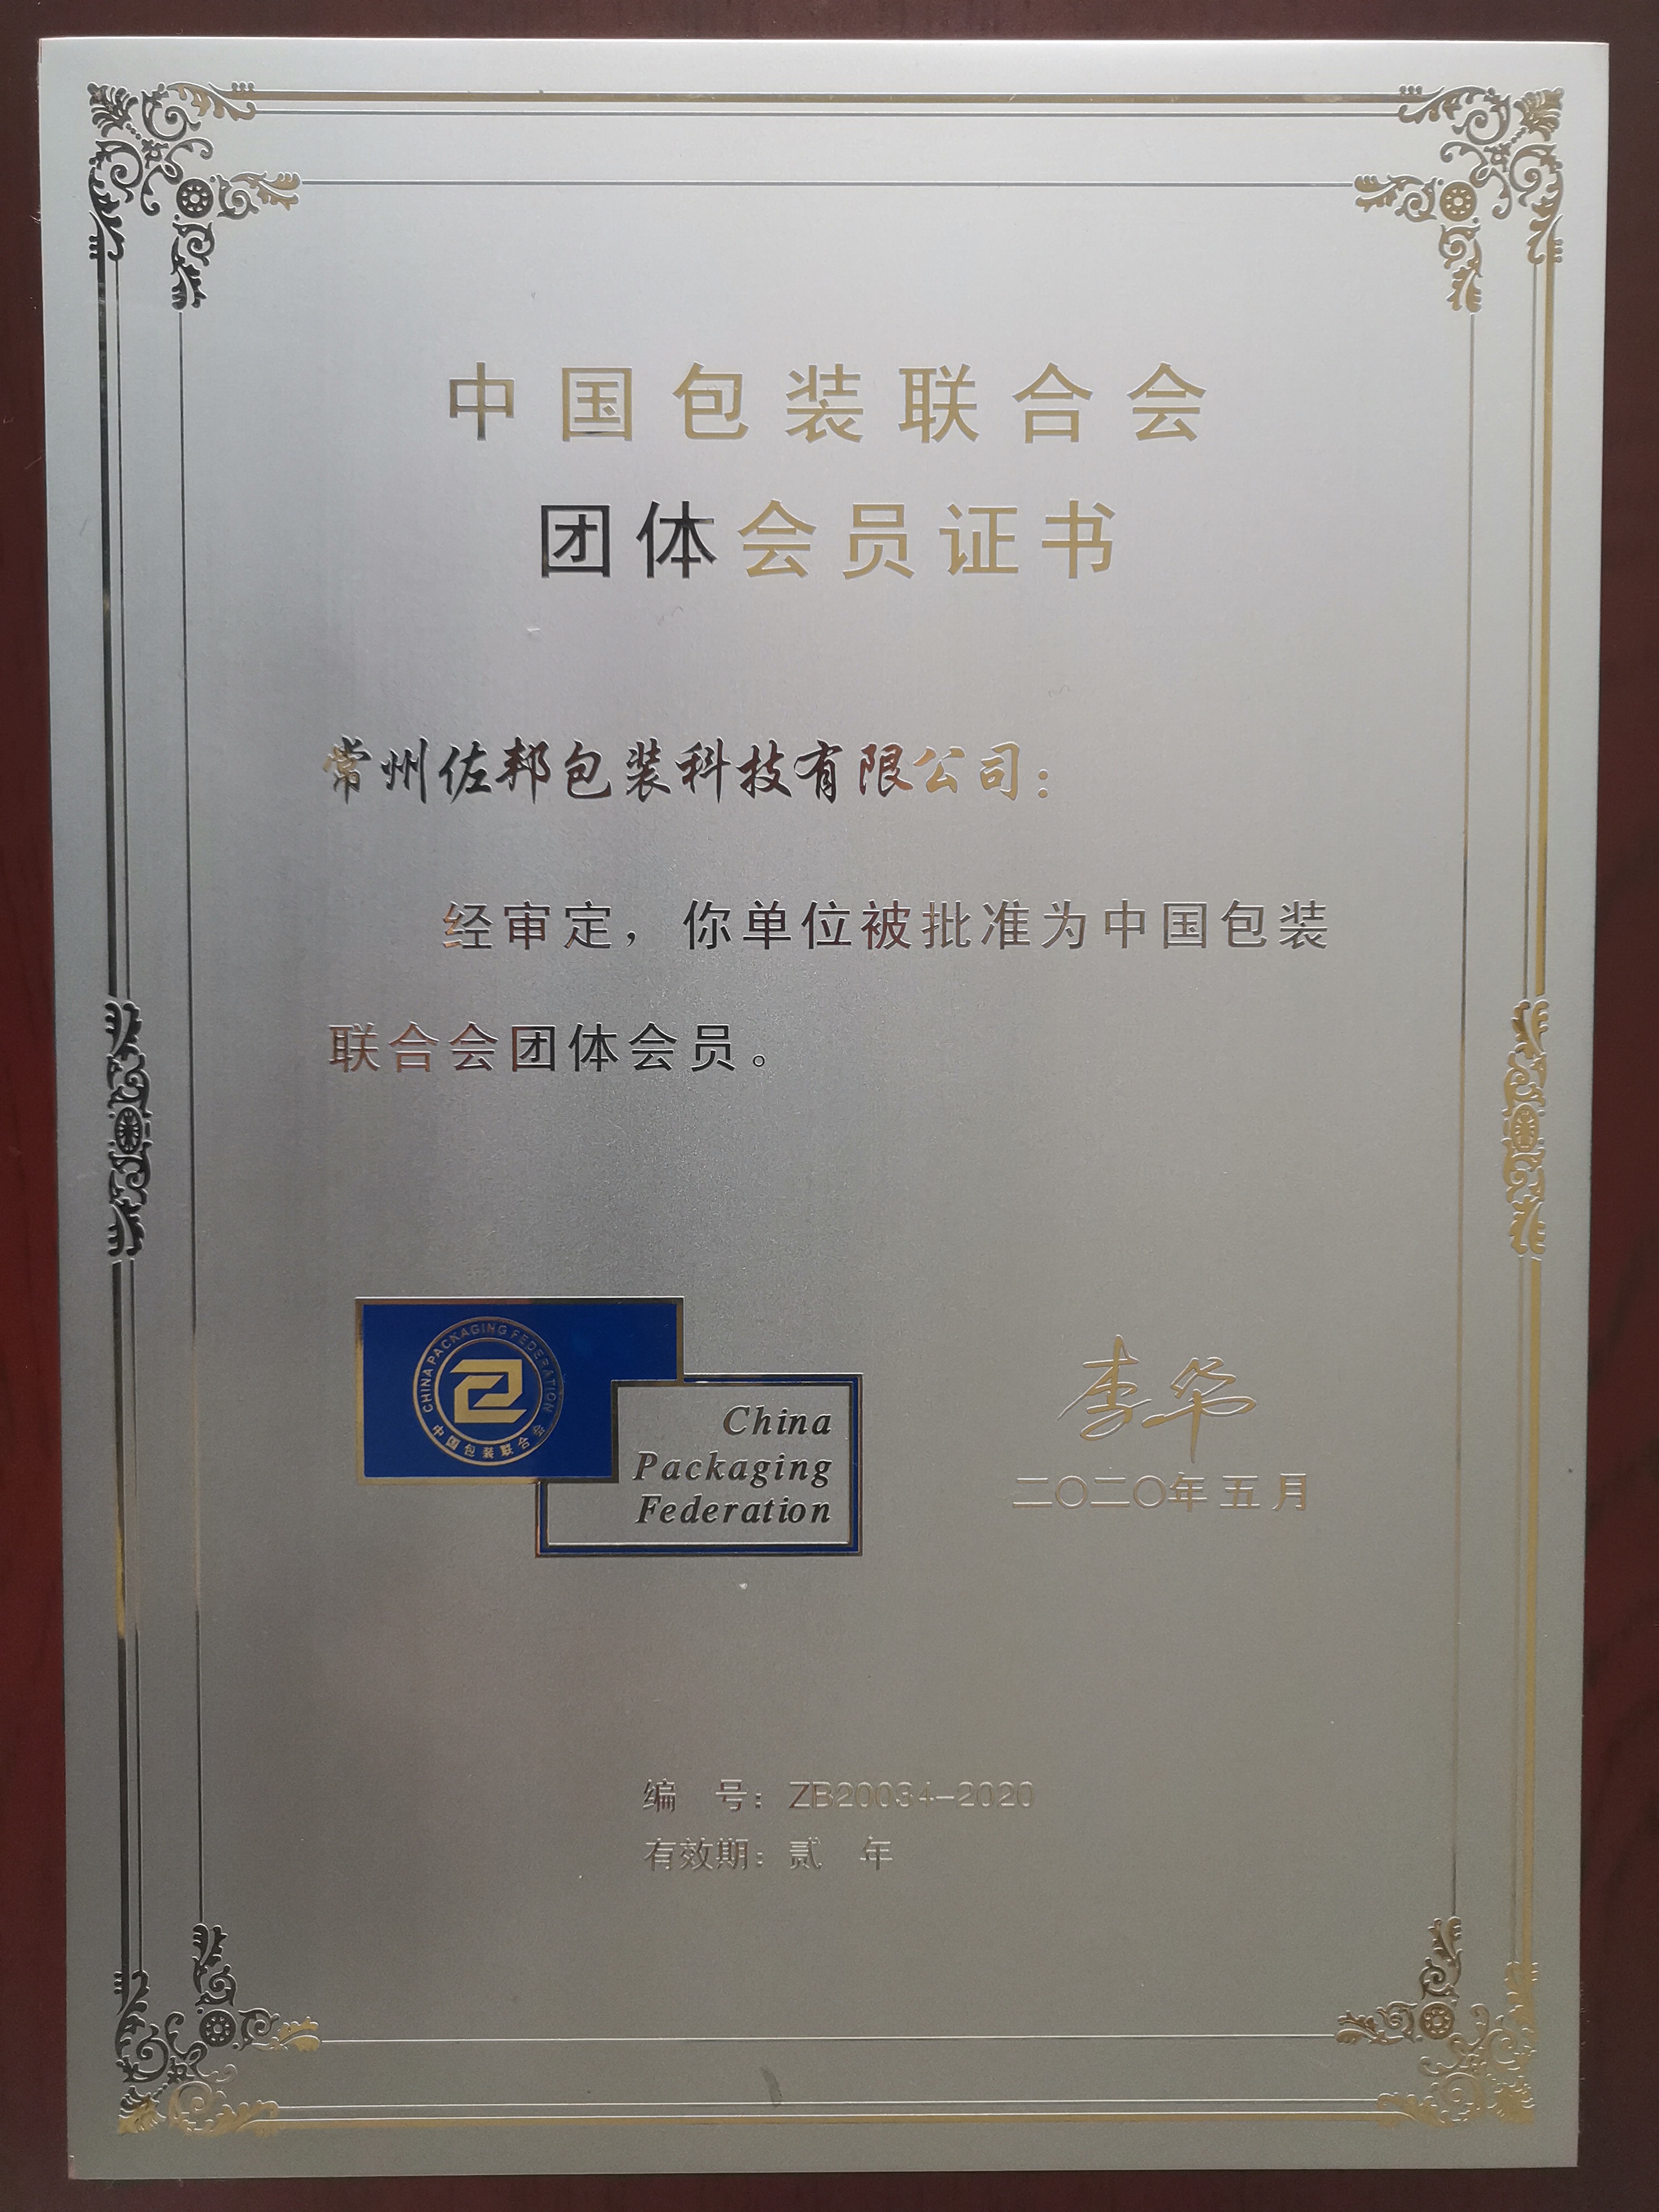 中国包装联合会团体会员铜牌